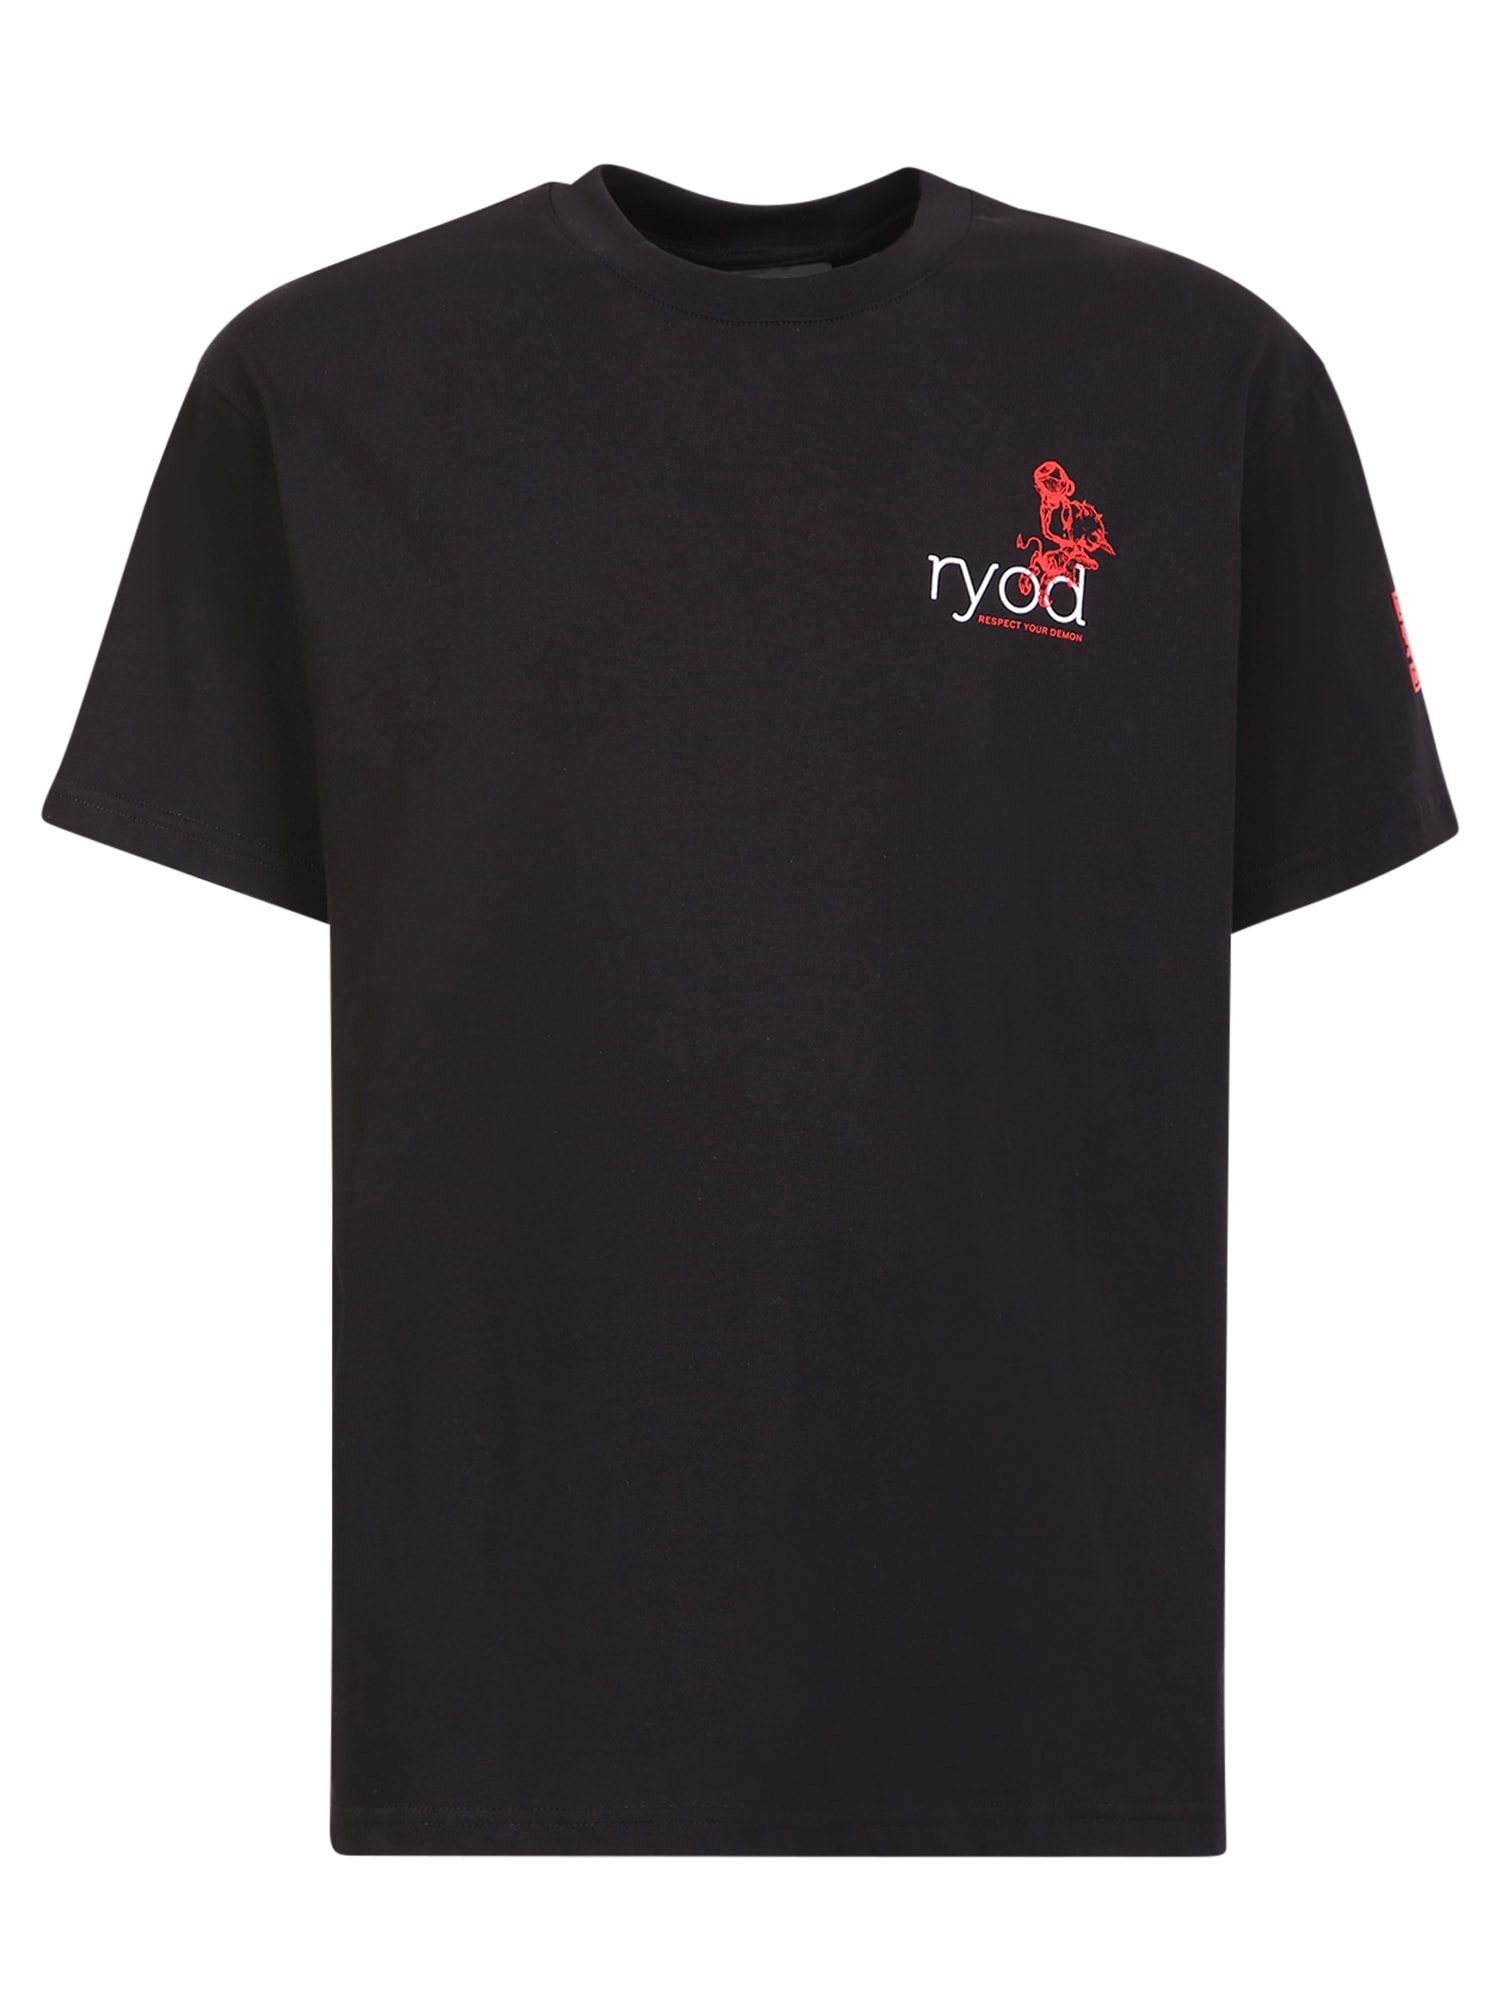 Ihs Ryod T-shirt